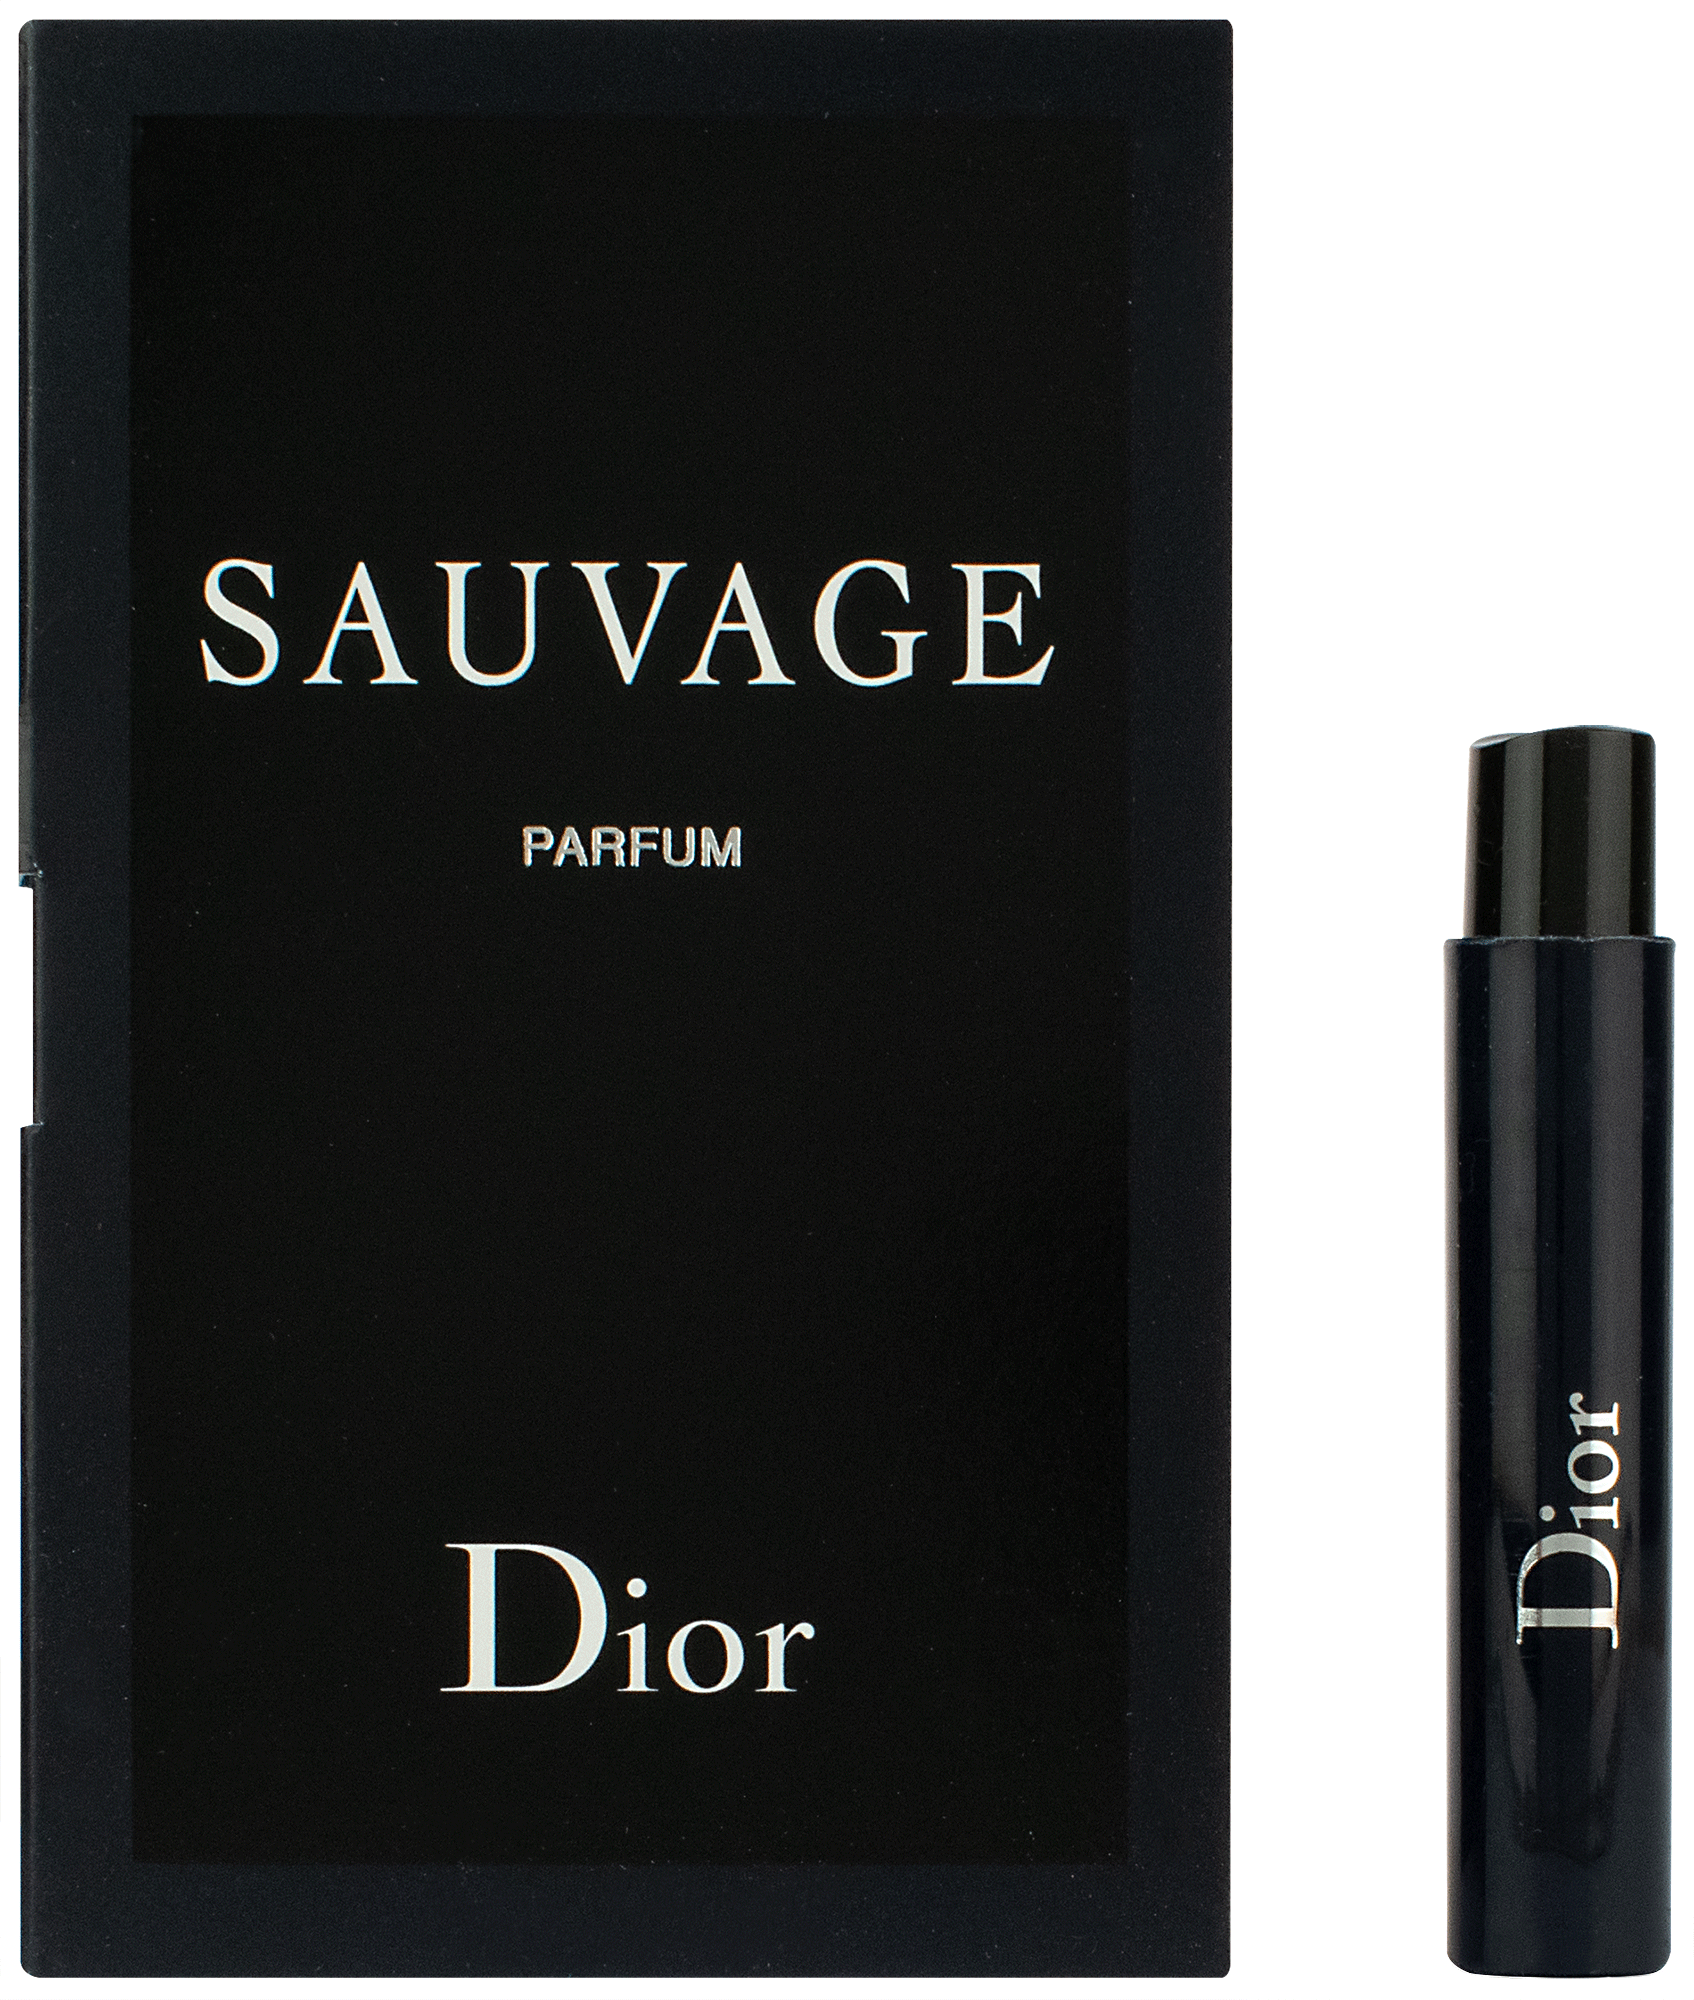 Dior Sauvage Elixir La Divina Ambroxana  Божественная амброксановая  комедия Демаши  YouTube